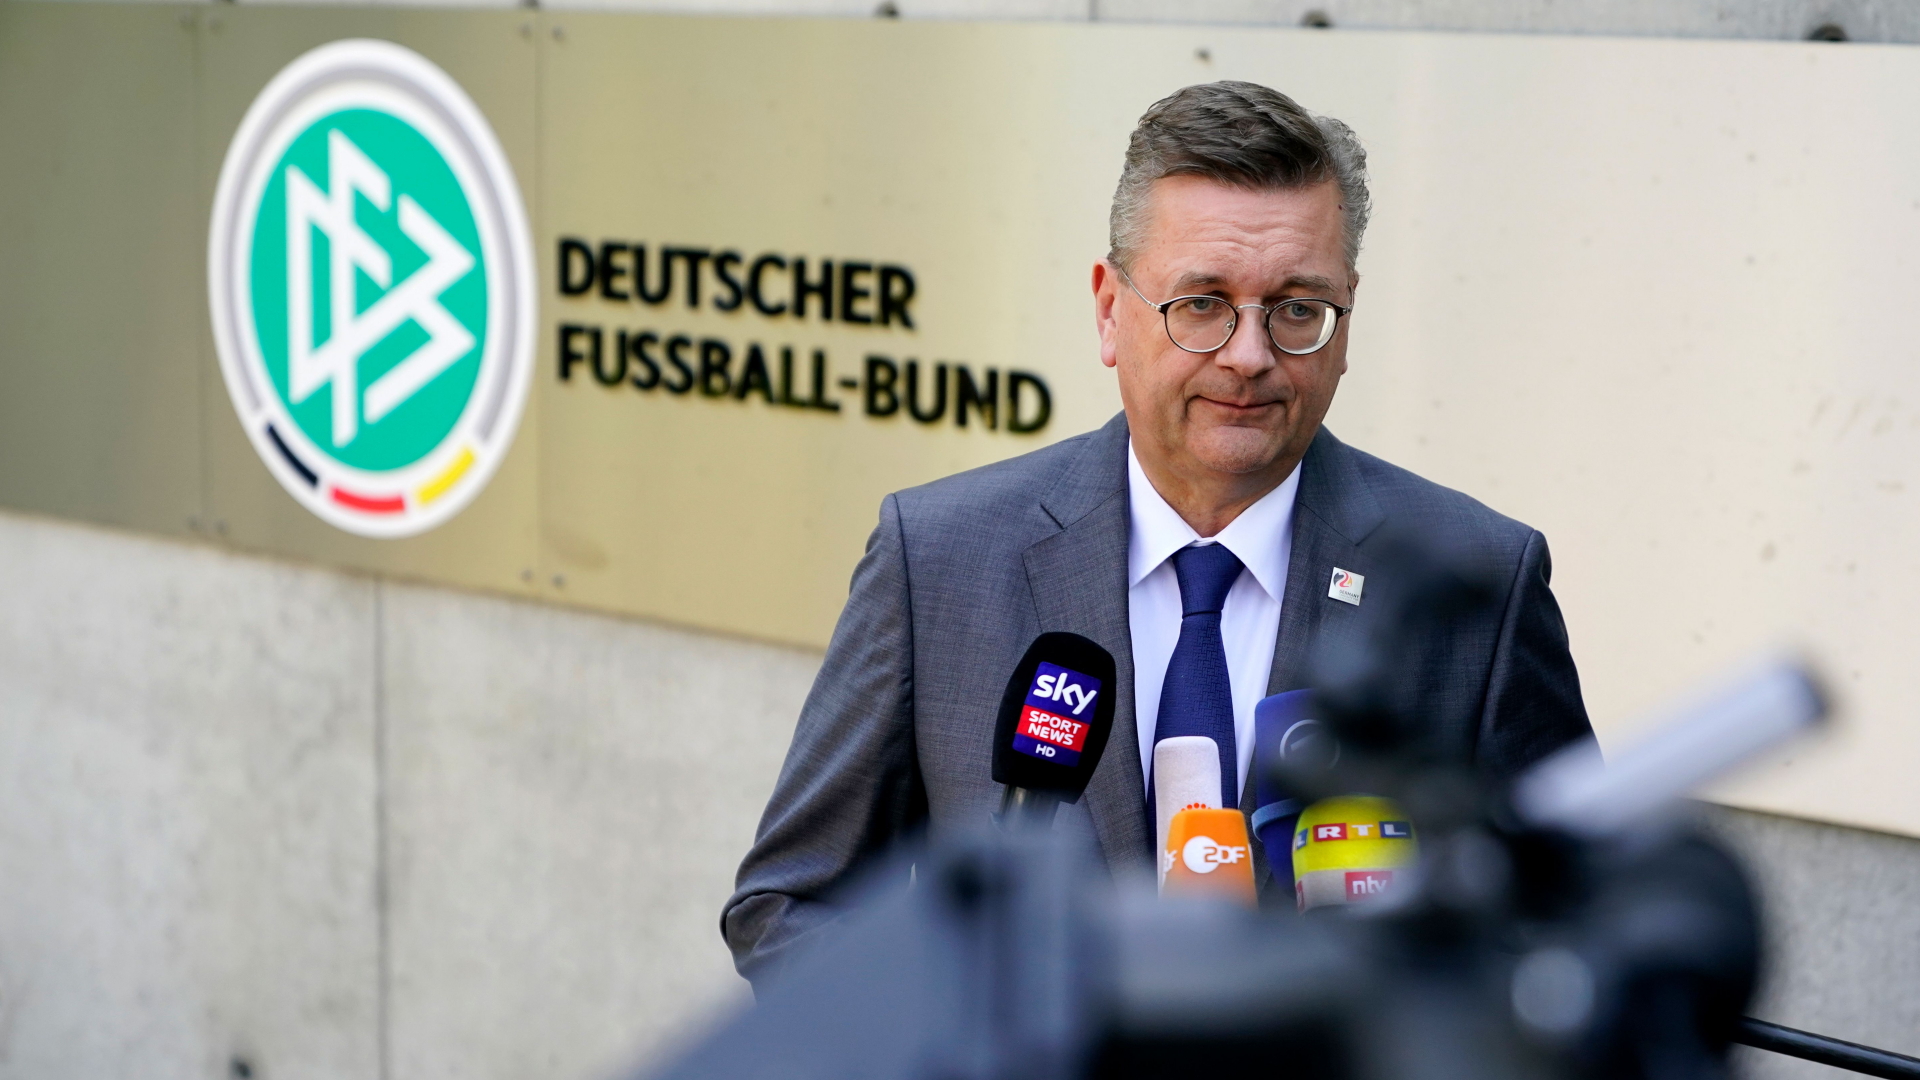 DFB-Präsident Reinhard Grindel | ALEXANDER BECHER/EPA-EFE/REX/Shu